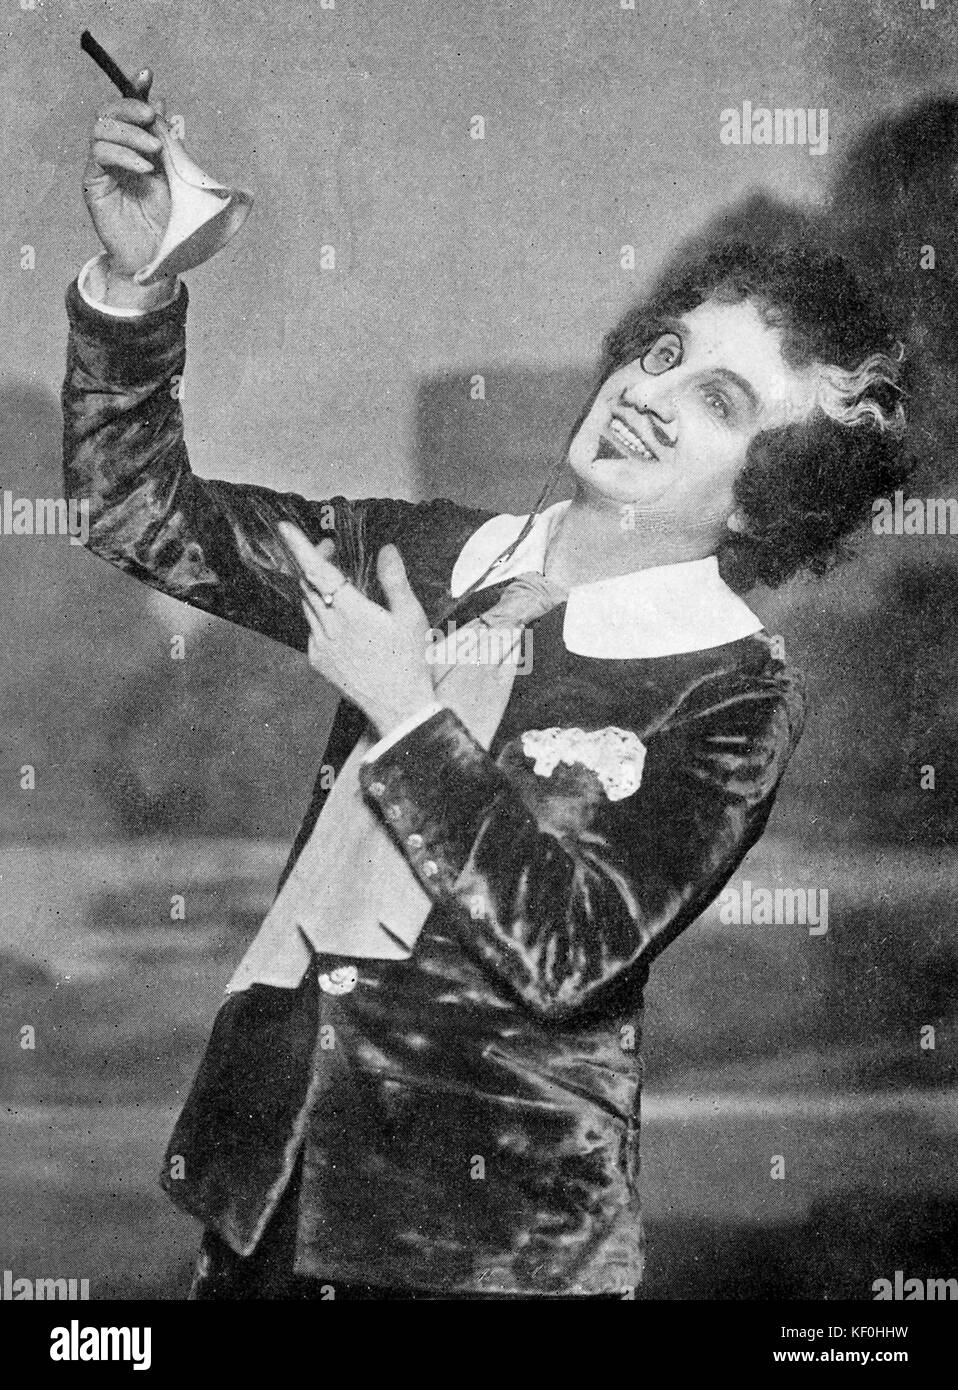 Henry A. Lytton als Bunthorne in "Patience" von Gilbert und Sullivan. Britischer komischer Schauspieler vom 3. Januar 1865-15. August 1936. Schöpfer der führenden Gilbert und Sullivan rollen. Stockfoto